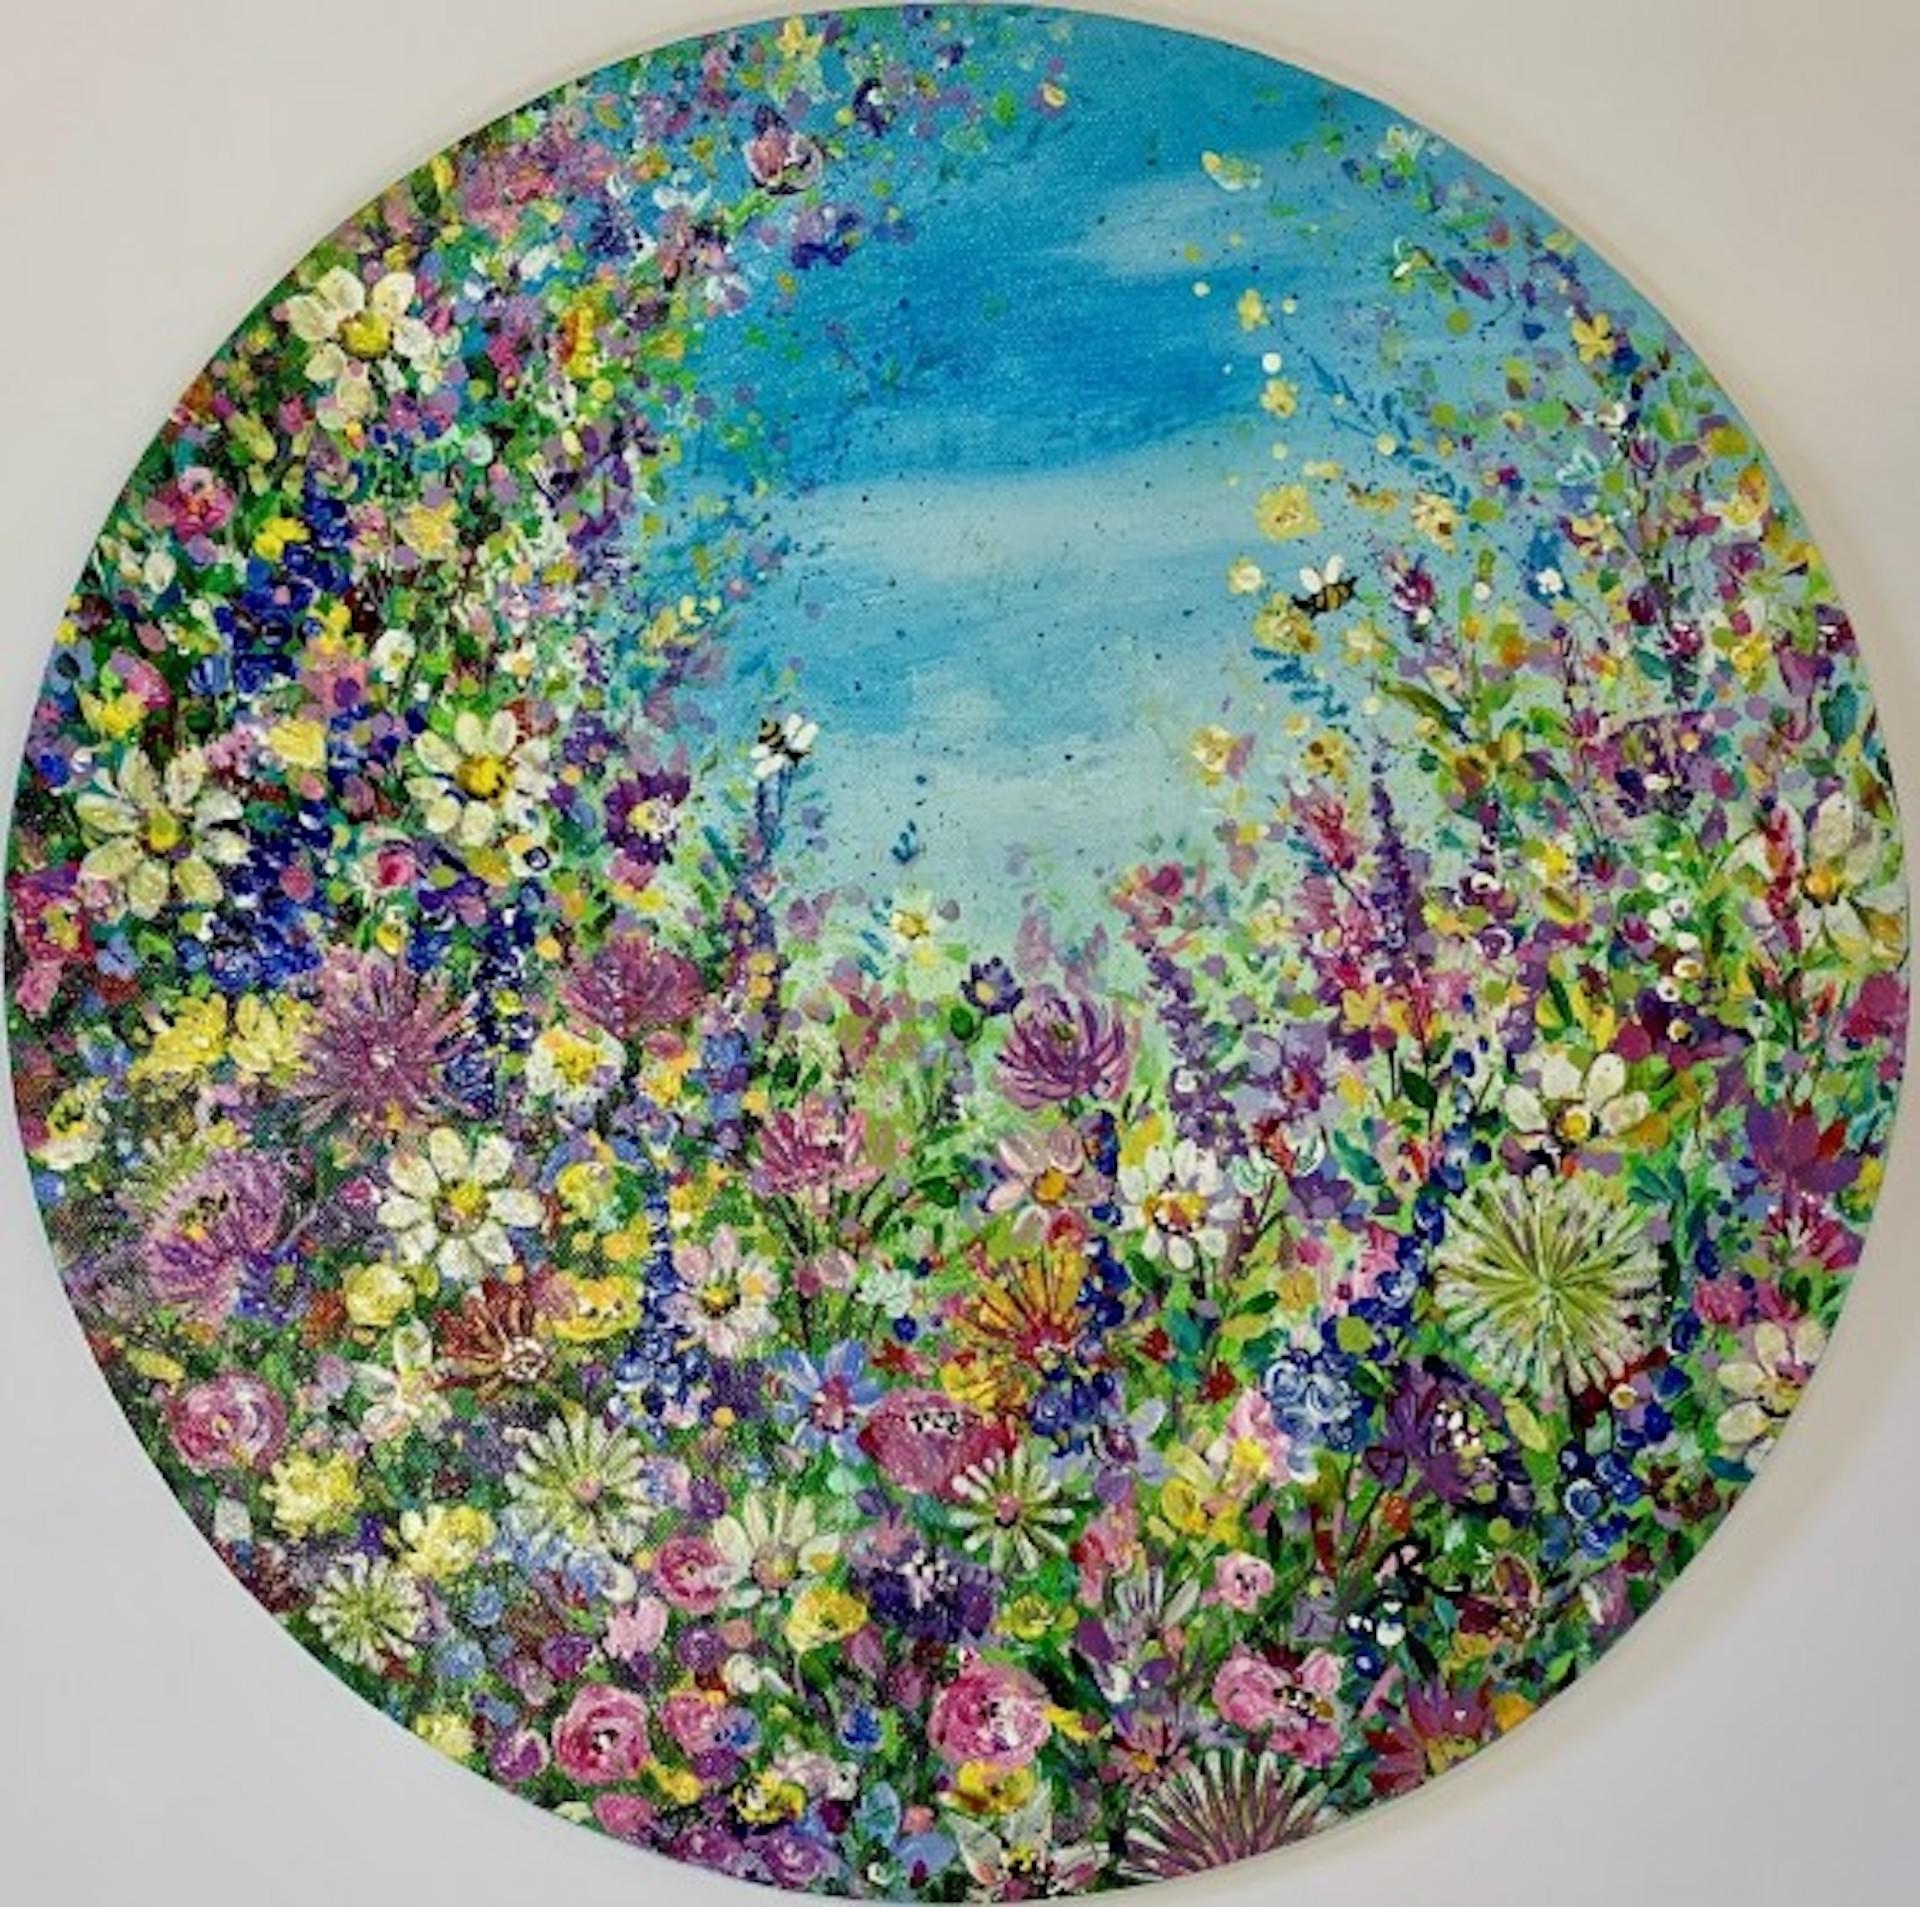 Jardin de fleurs sauvages avec abeilles par Jan Rogers [2021]
original

Peinture acrylique sur toile

Taille de l'image : H:30 cm x L:30 cm

Taille complète de l'œuvre non encadrée : H:30 cm x L:30 cm x P:0,1cm

Vendu sans cadre

Veuillez noter que